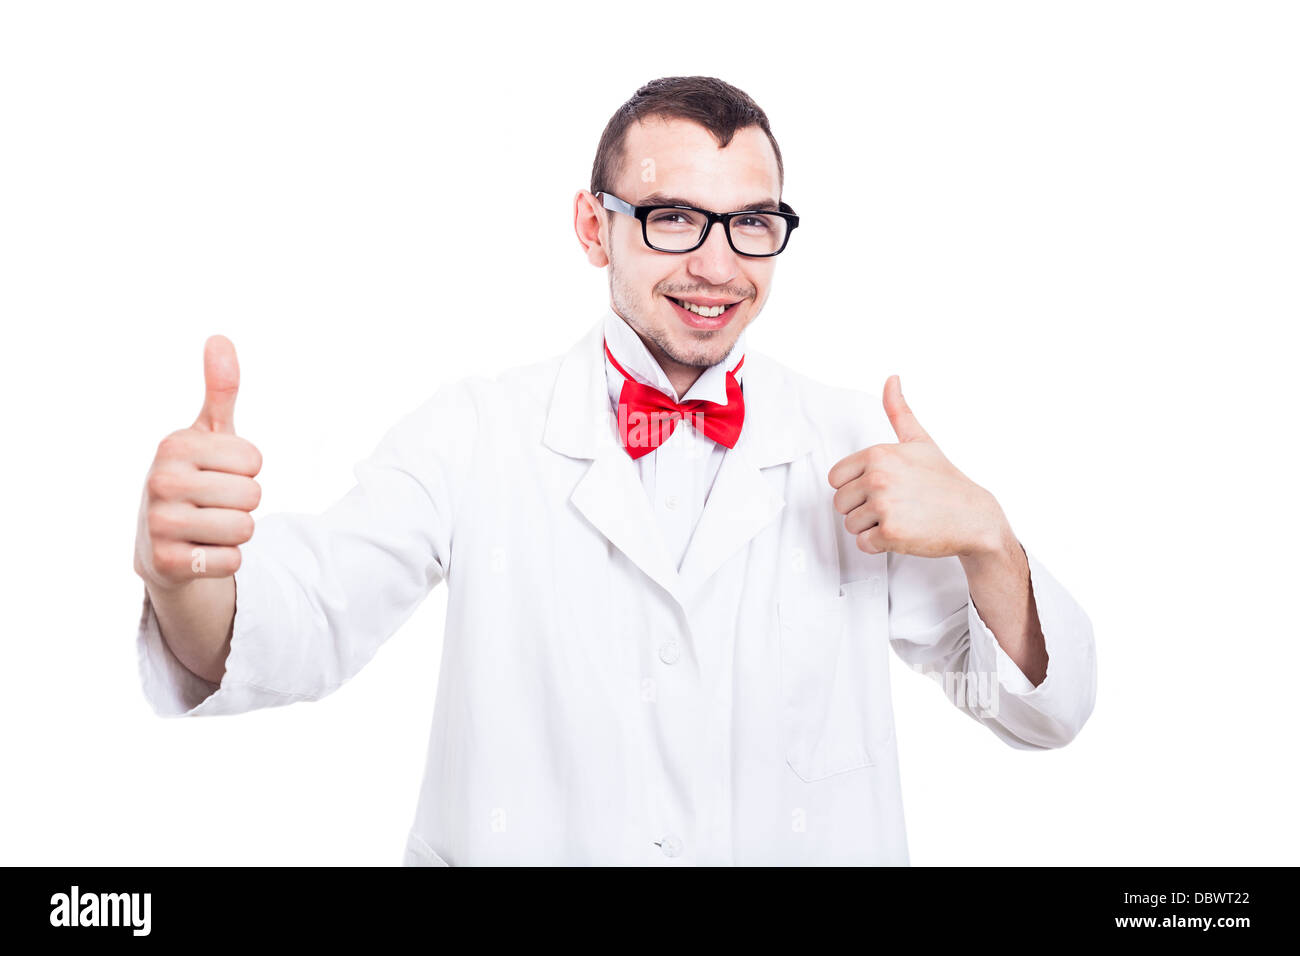 Les jeunes professionnels scientist in lab coat showing Thumbs up, isolé sur fond blanc Banque D'Images